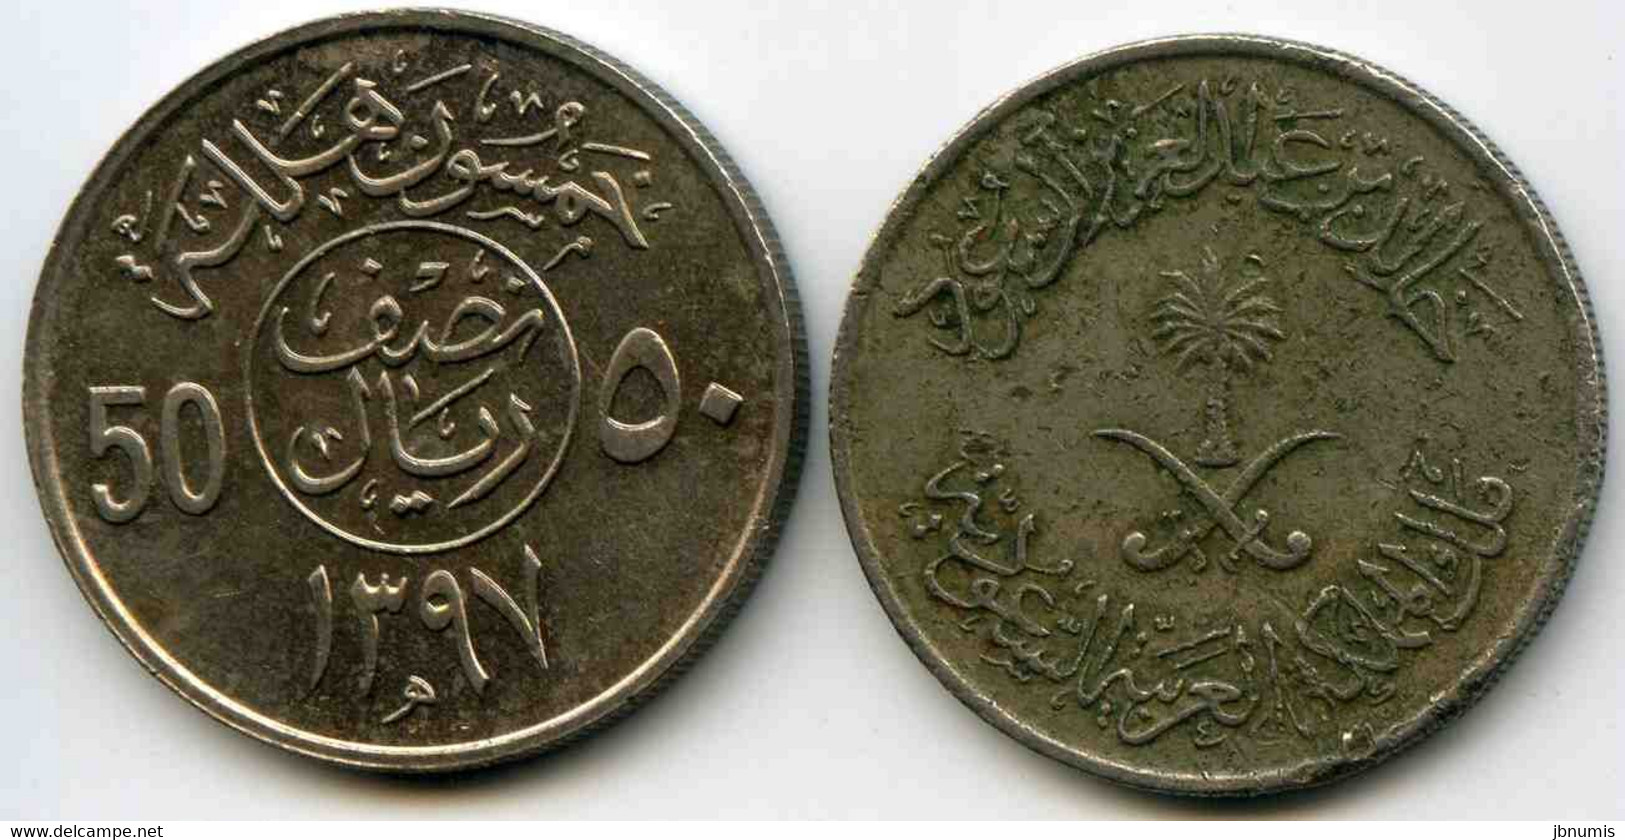 Arabie Saoudite Saudi Arabia 50 Halala 1397 1976 KM 56 - Saudi Arabia